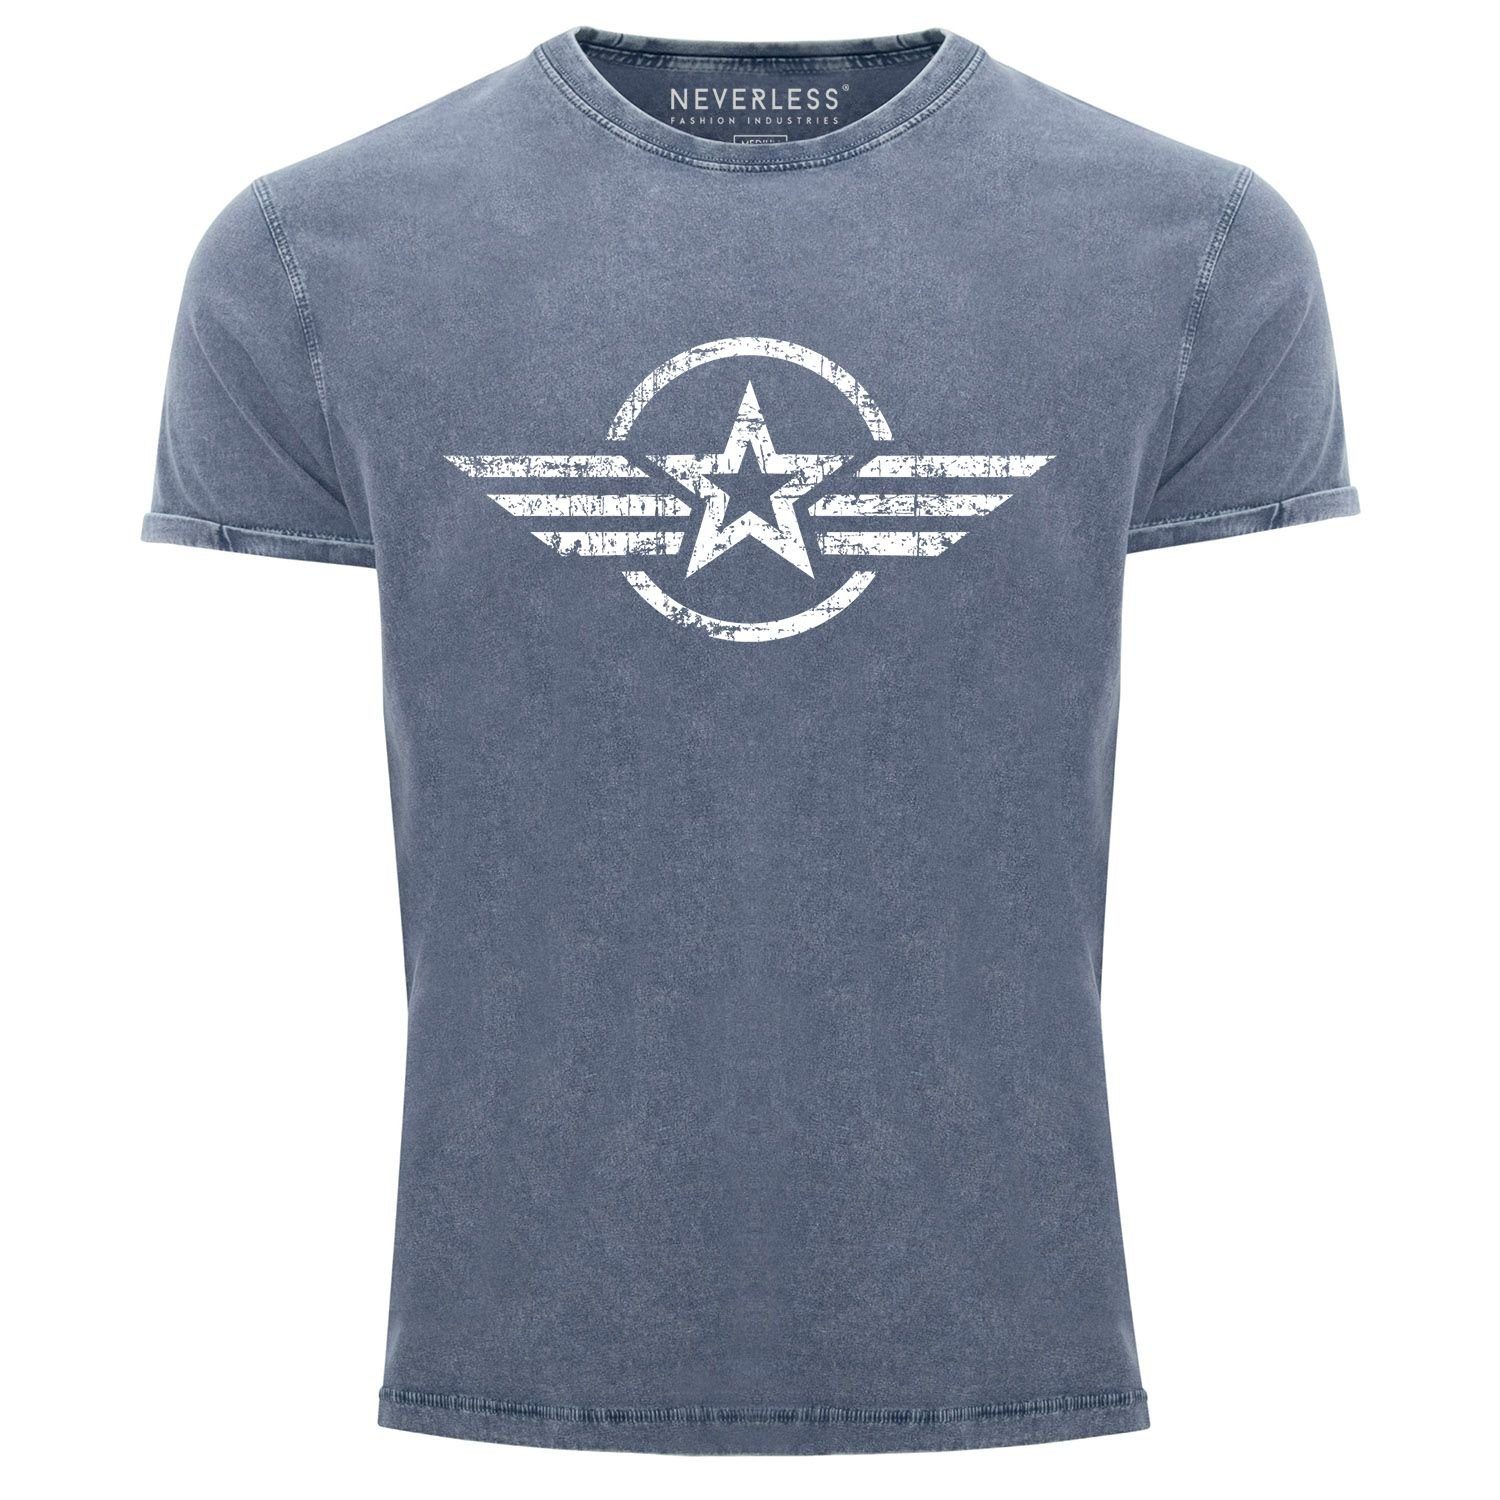 Neverless Print-Shirt Herren Vintage Shirt Airforce Stern Army Military Aufdruck Printshirt T-Shirt Aufdruck Used Look Slim Fit Neverless® mit Print blau